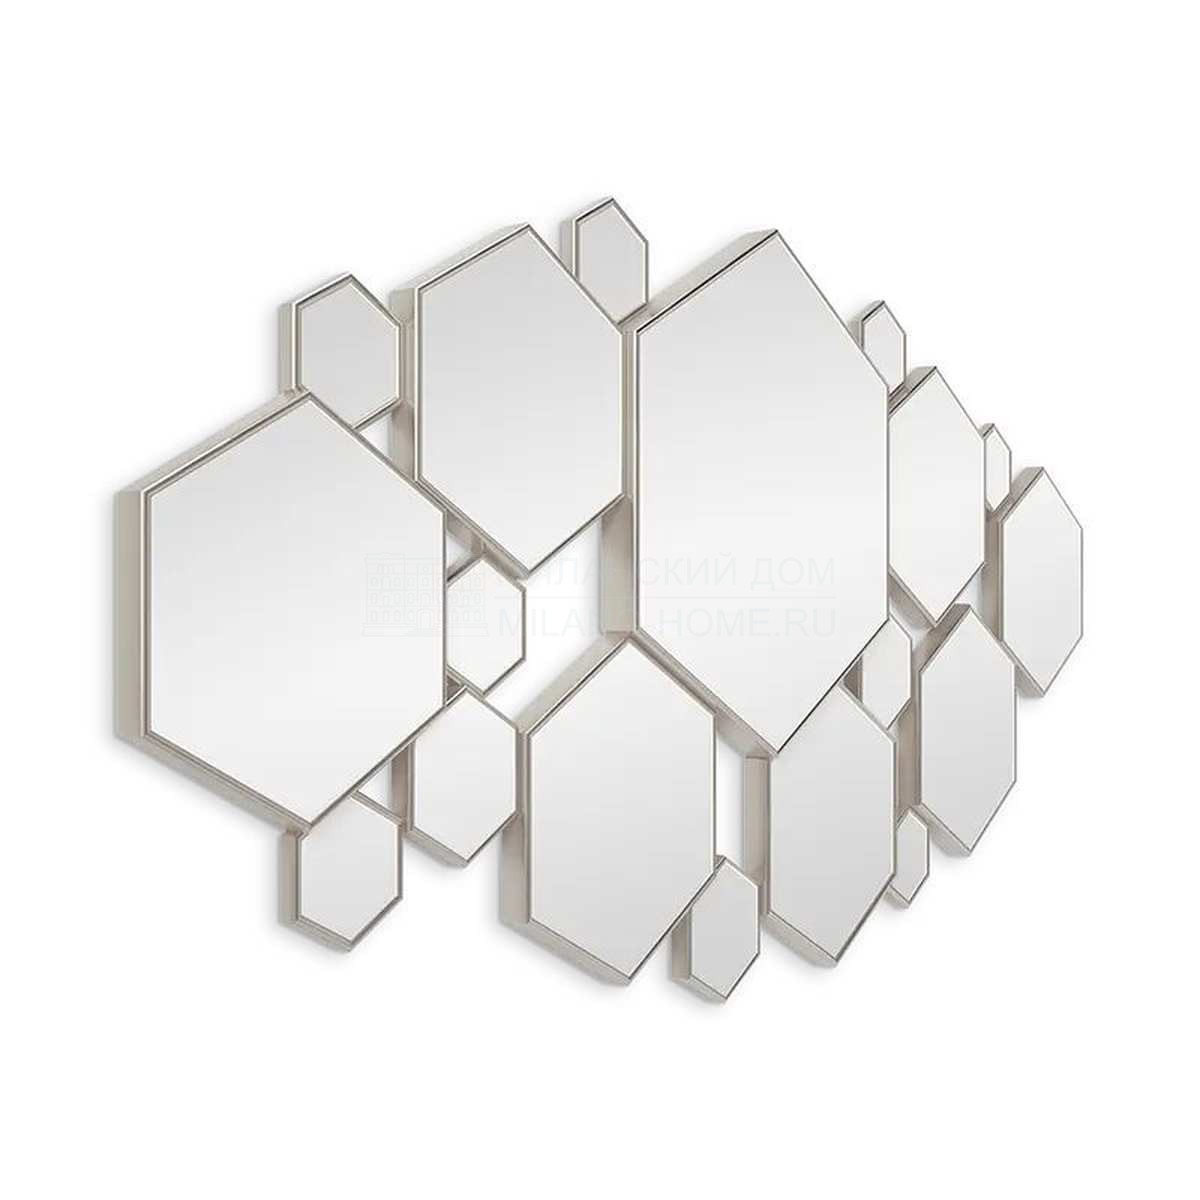 Зеркало настенное Hexagonale mirror из США фабрики CHRISTOPHER GUY